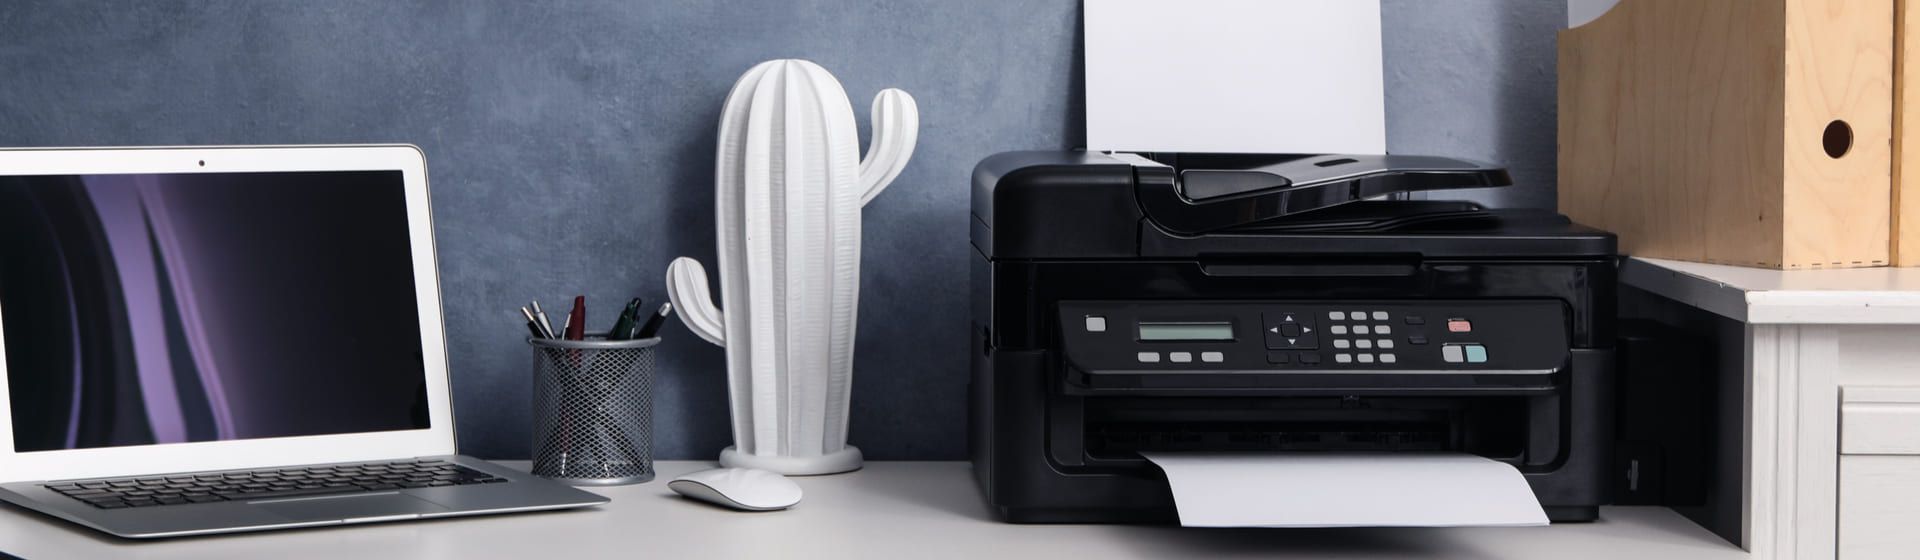 Melhor impressora colorida: 9 bons modelos que imprimem em cores